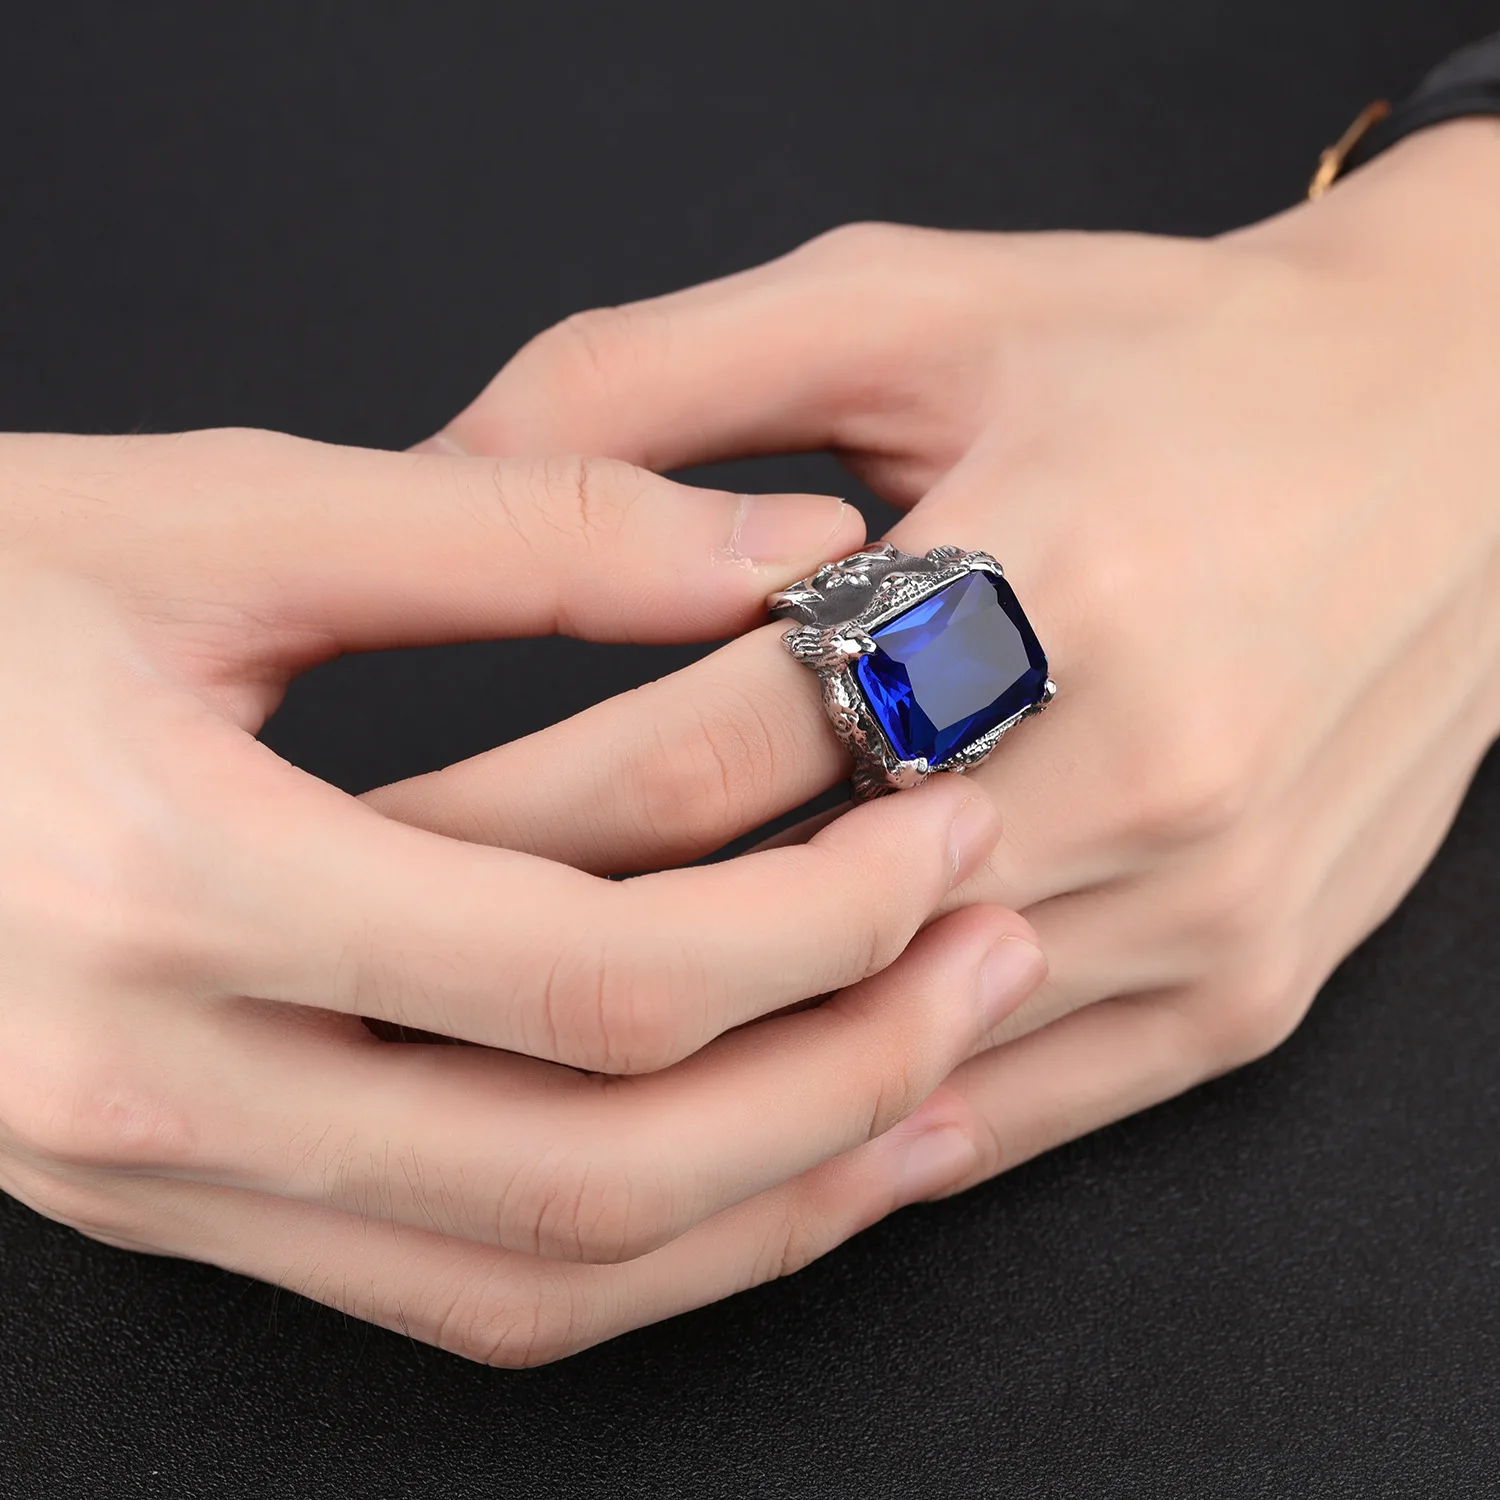 FntYcm Viking Silver Ax Signet дизайн Байкер Обручальные кольца для трендовых мужчин кольцо двигателя из нержавеющей стали браслет синий кристалл мужское кольцо